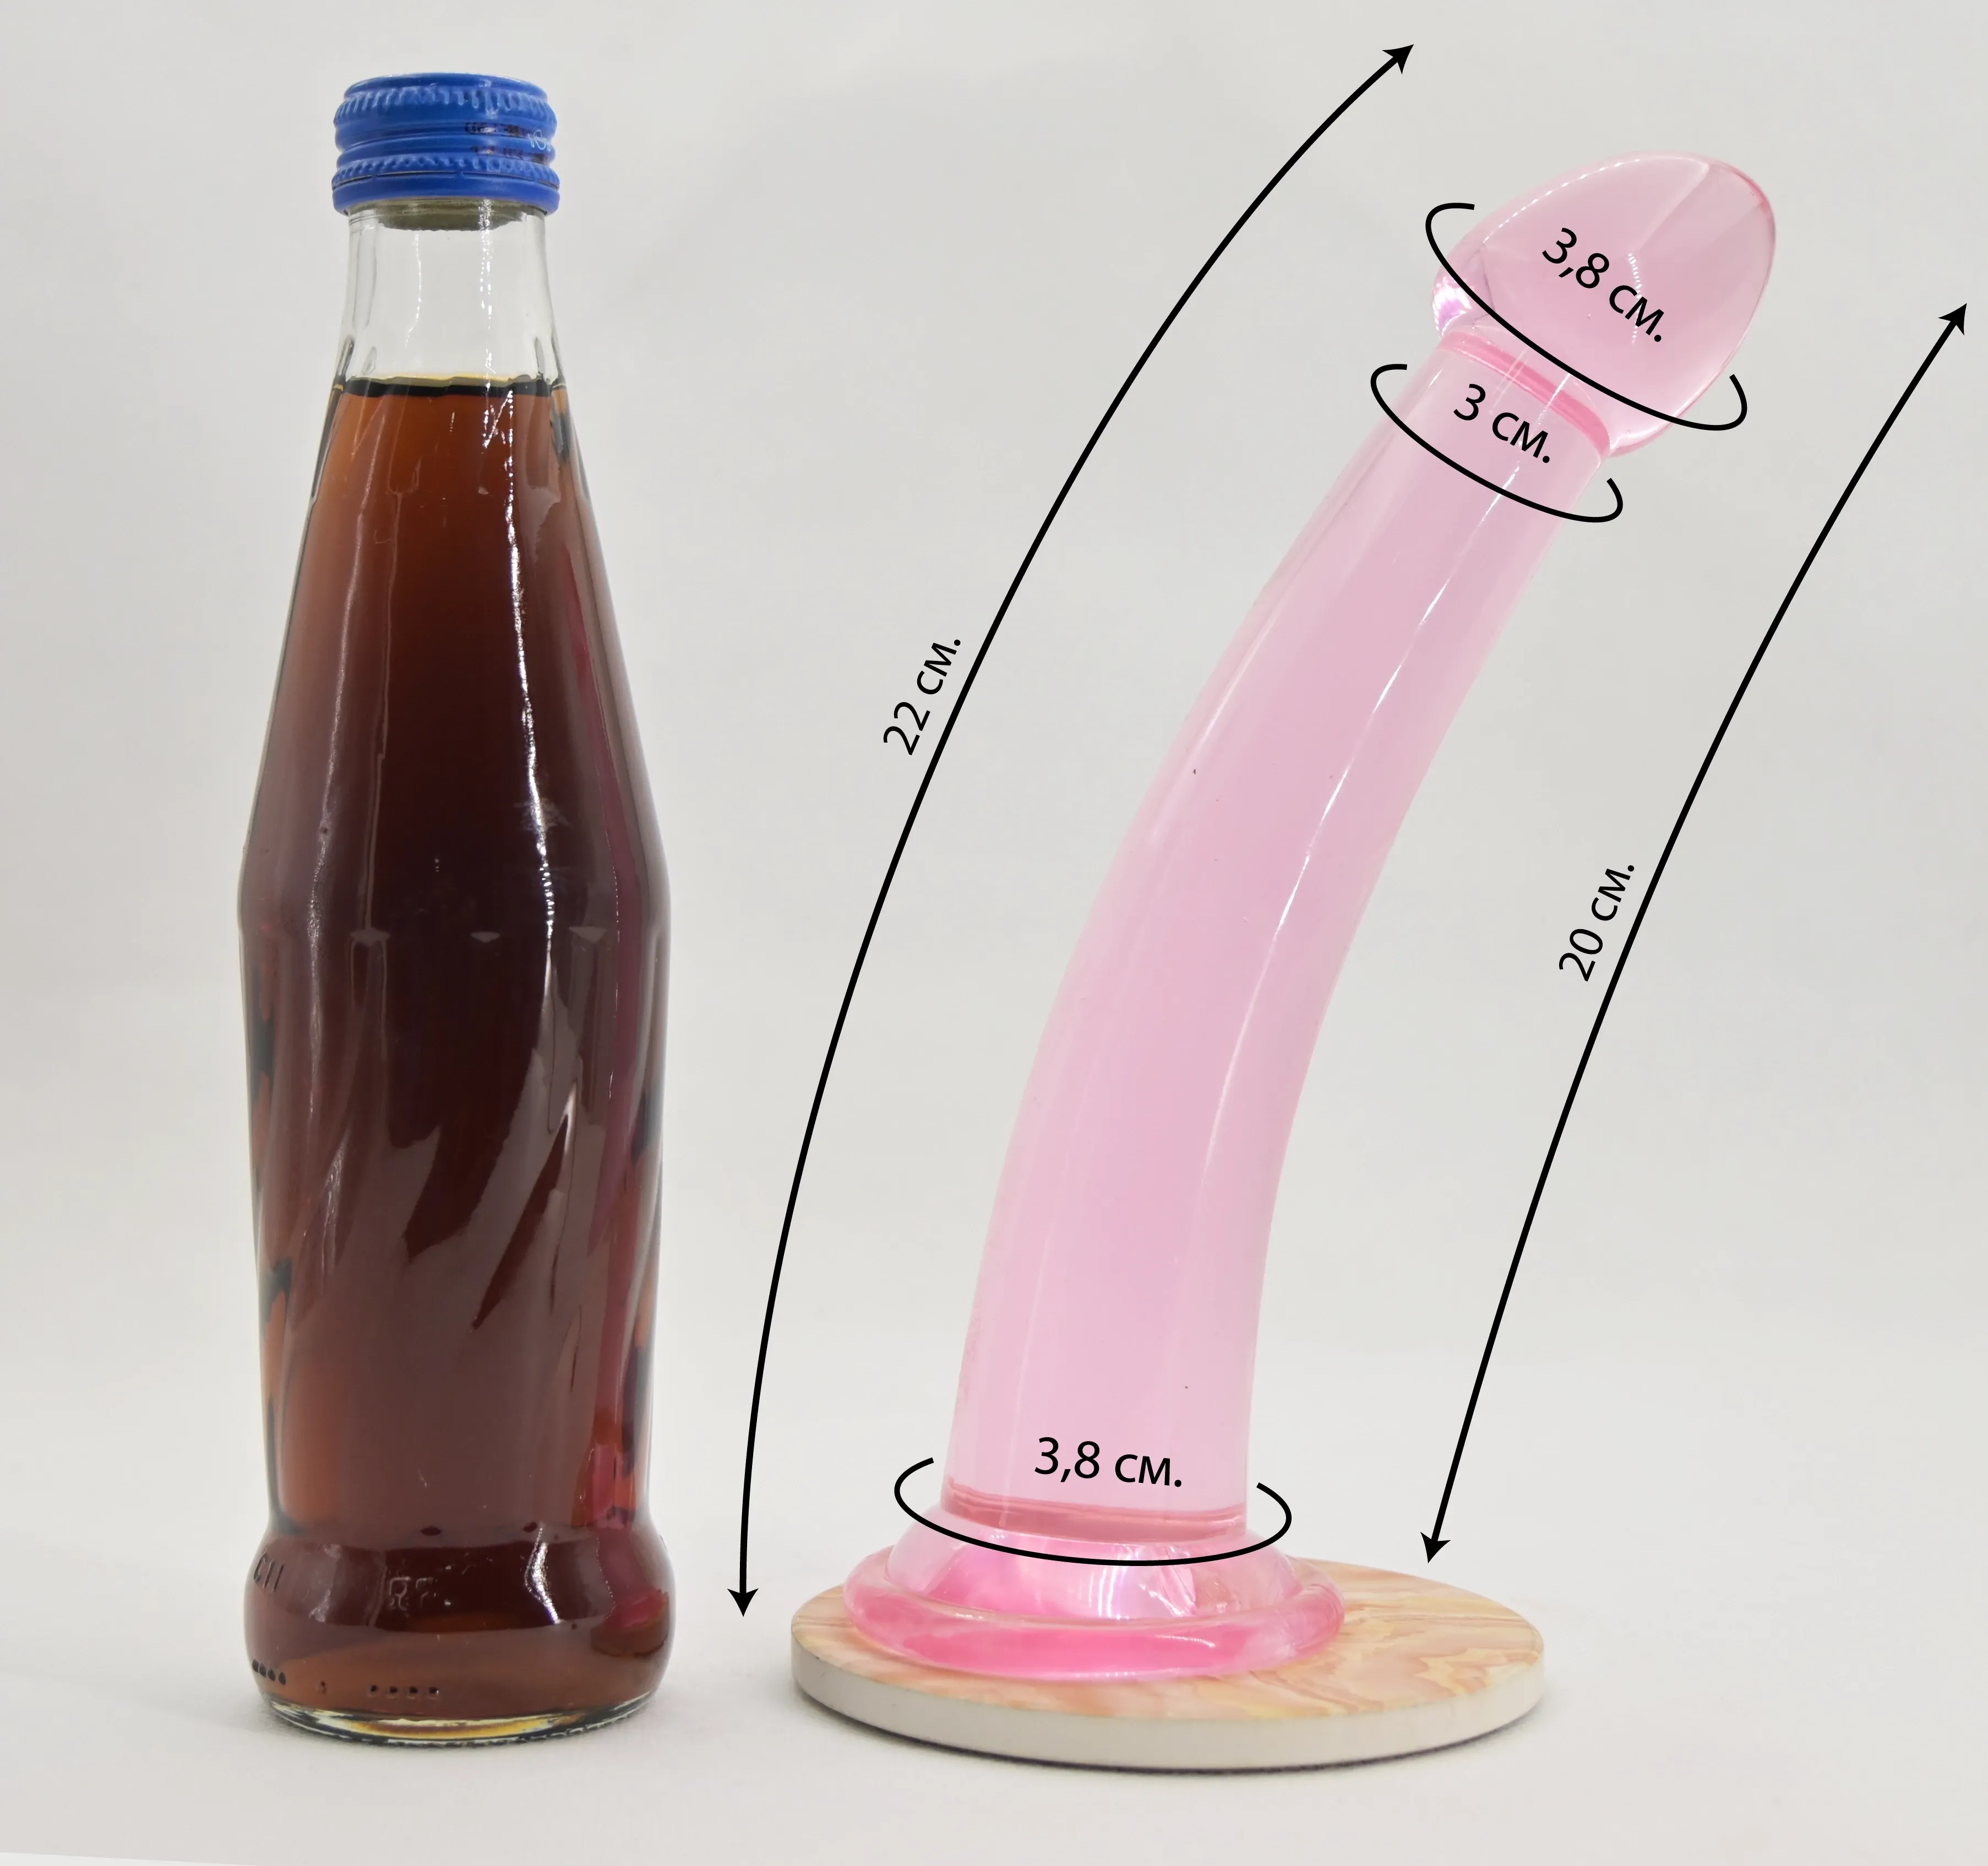 Размеры дилдо и сравнение с бутылкой пепси